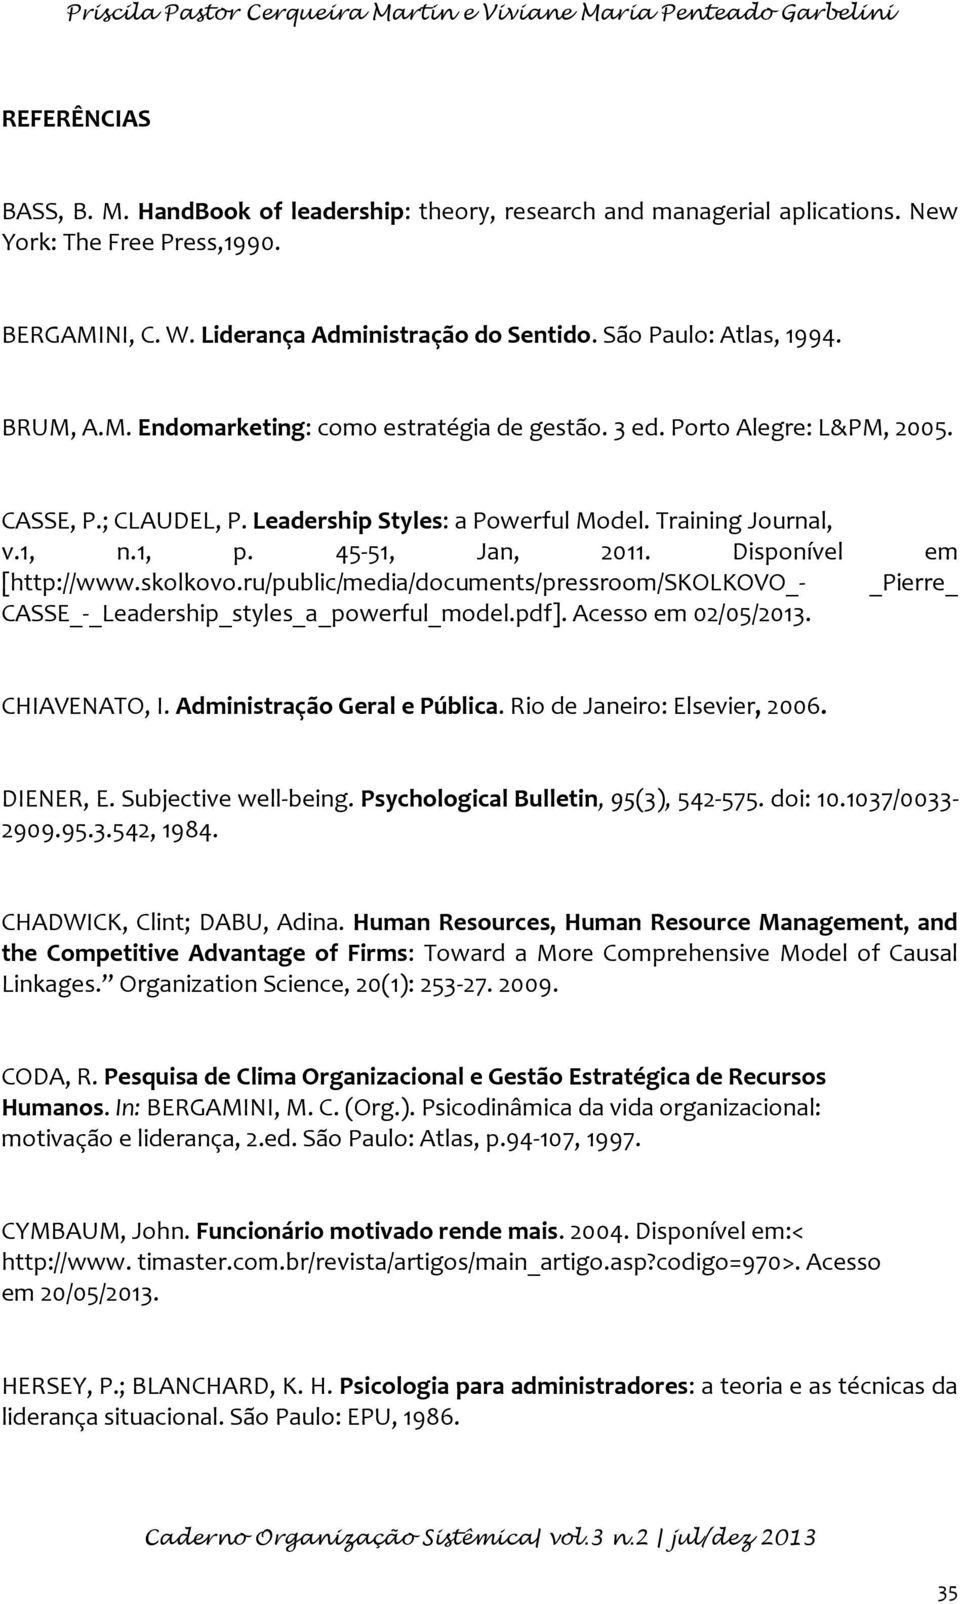 Leadership Styles: a Powerful Model. Training Journal, v.1, n.1, p. 45-51, Jan, 2011. Disponível em [http://www.skolkovo.